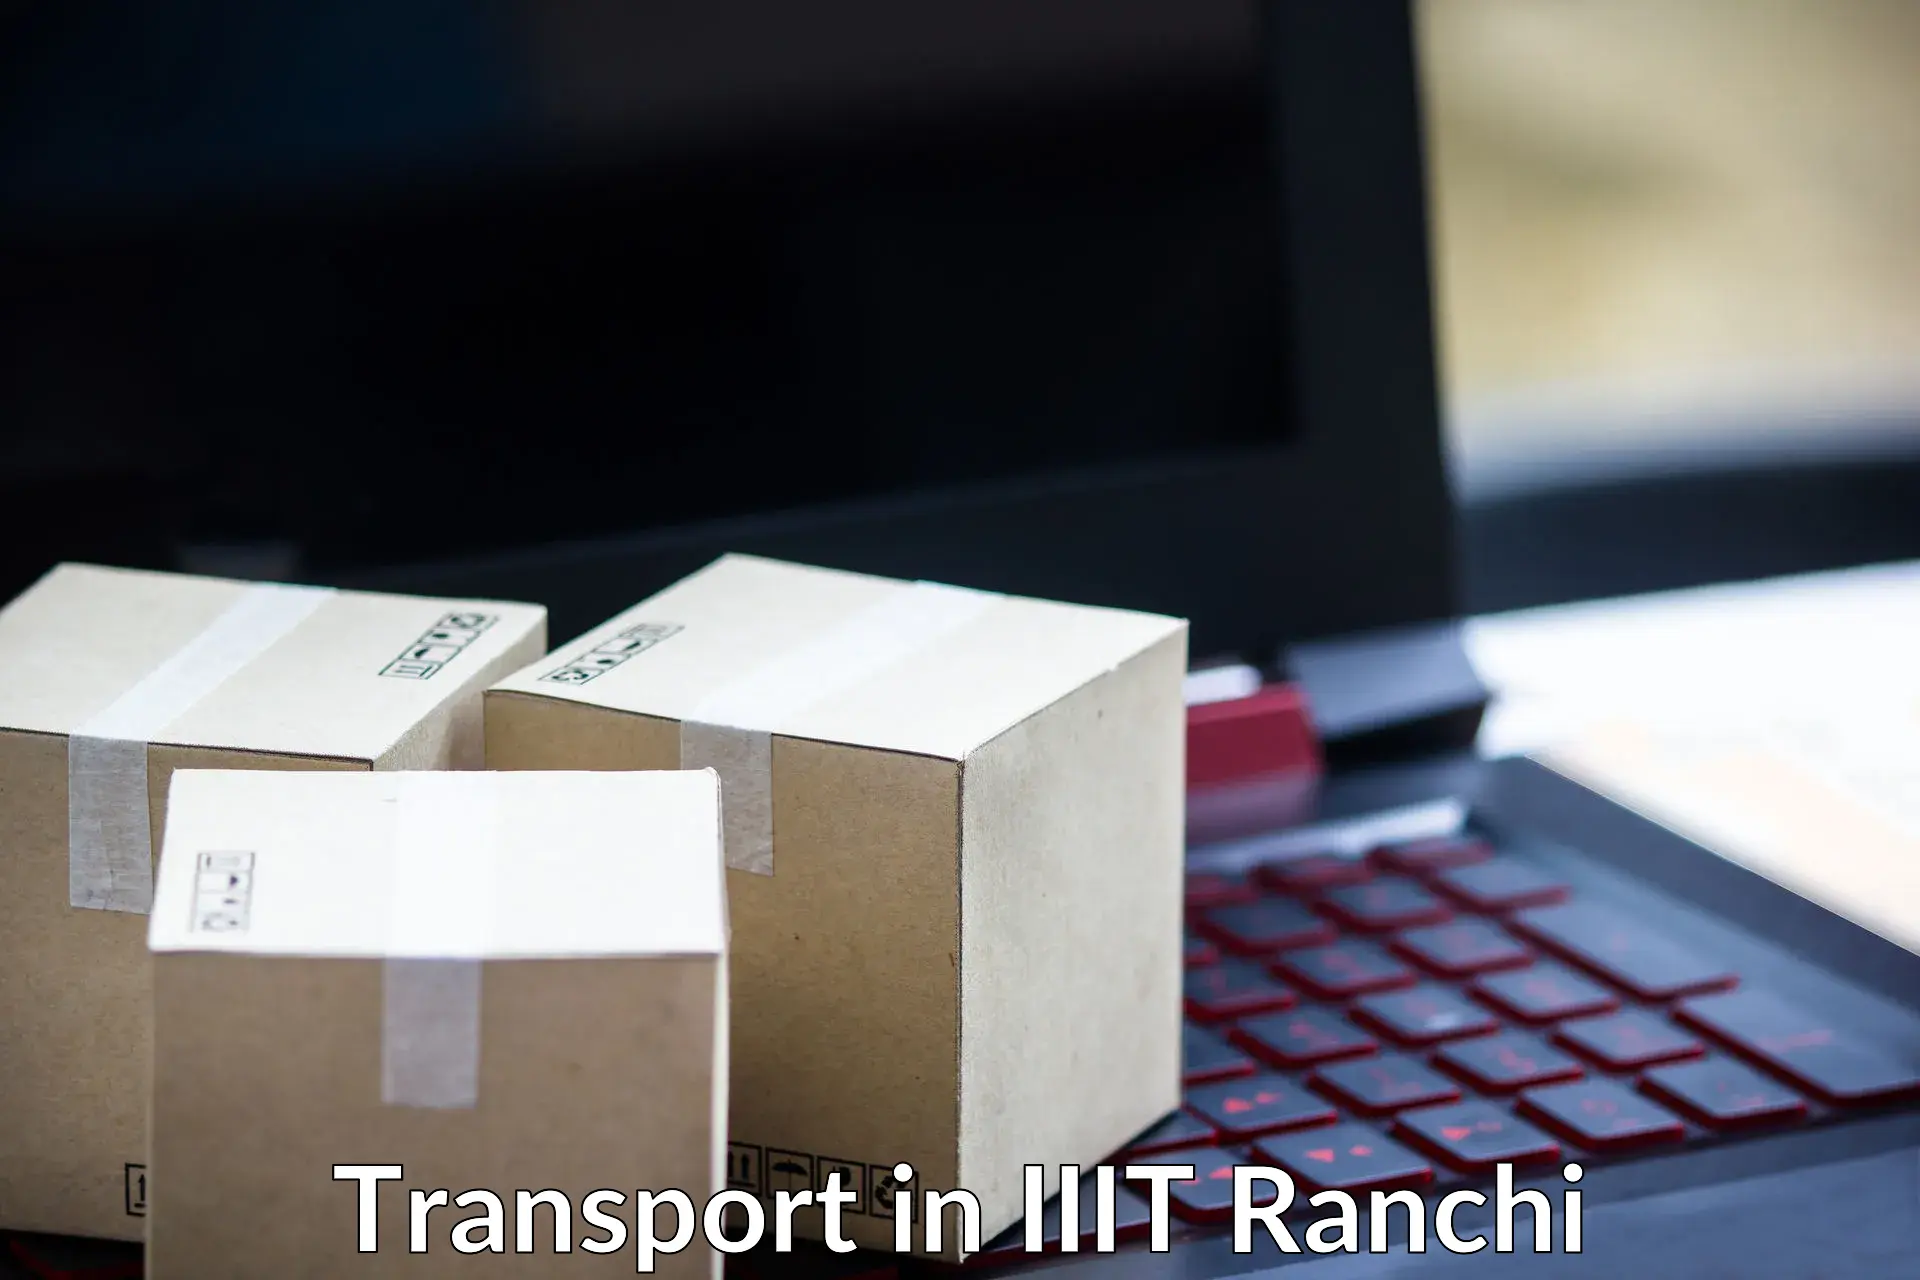 Online transport booking in IIIT Ranchi